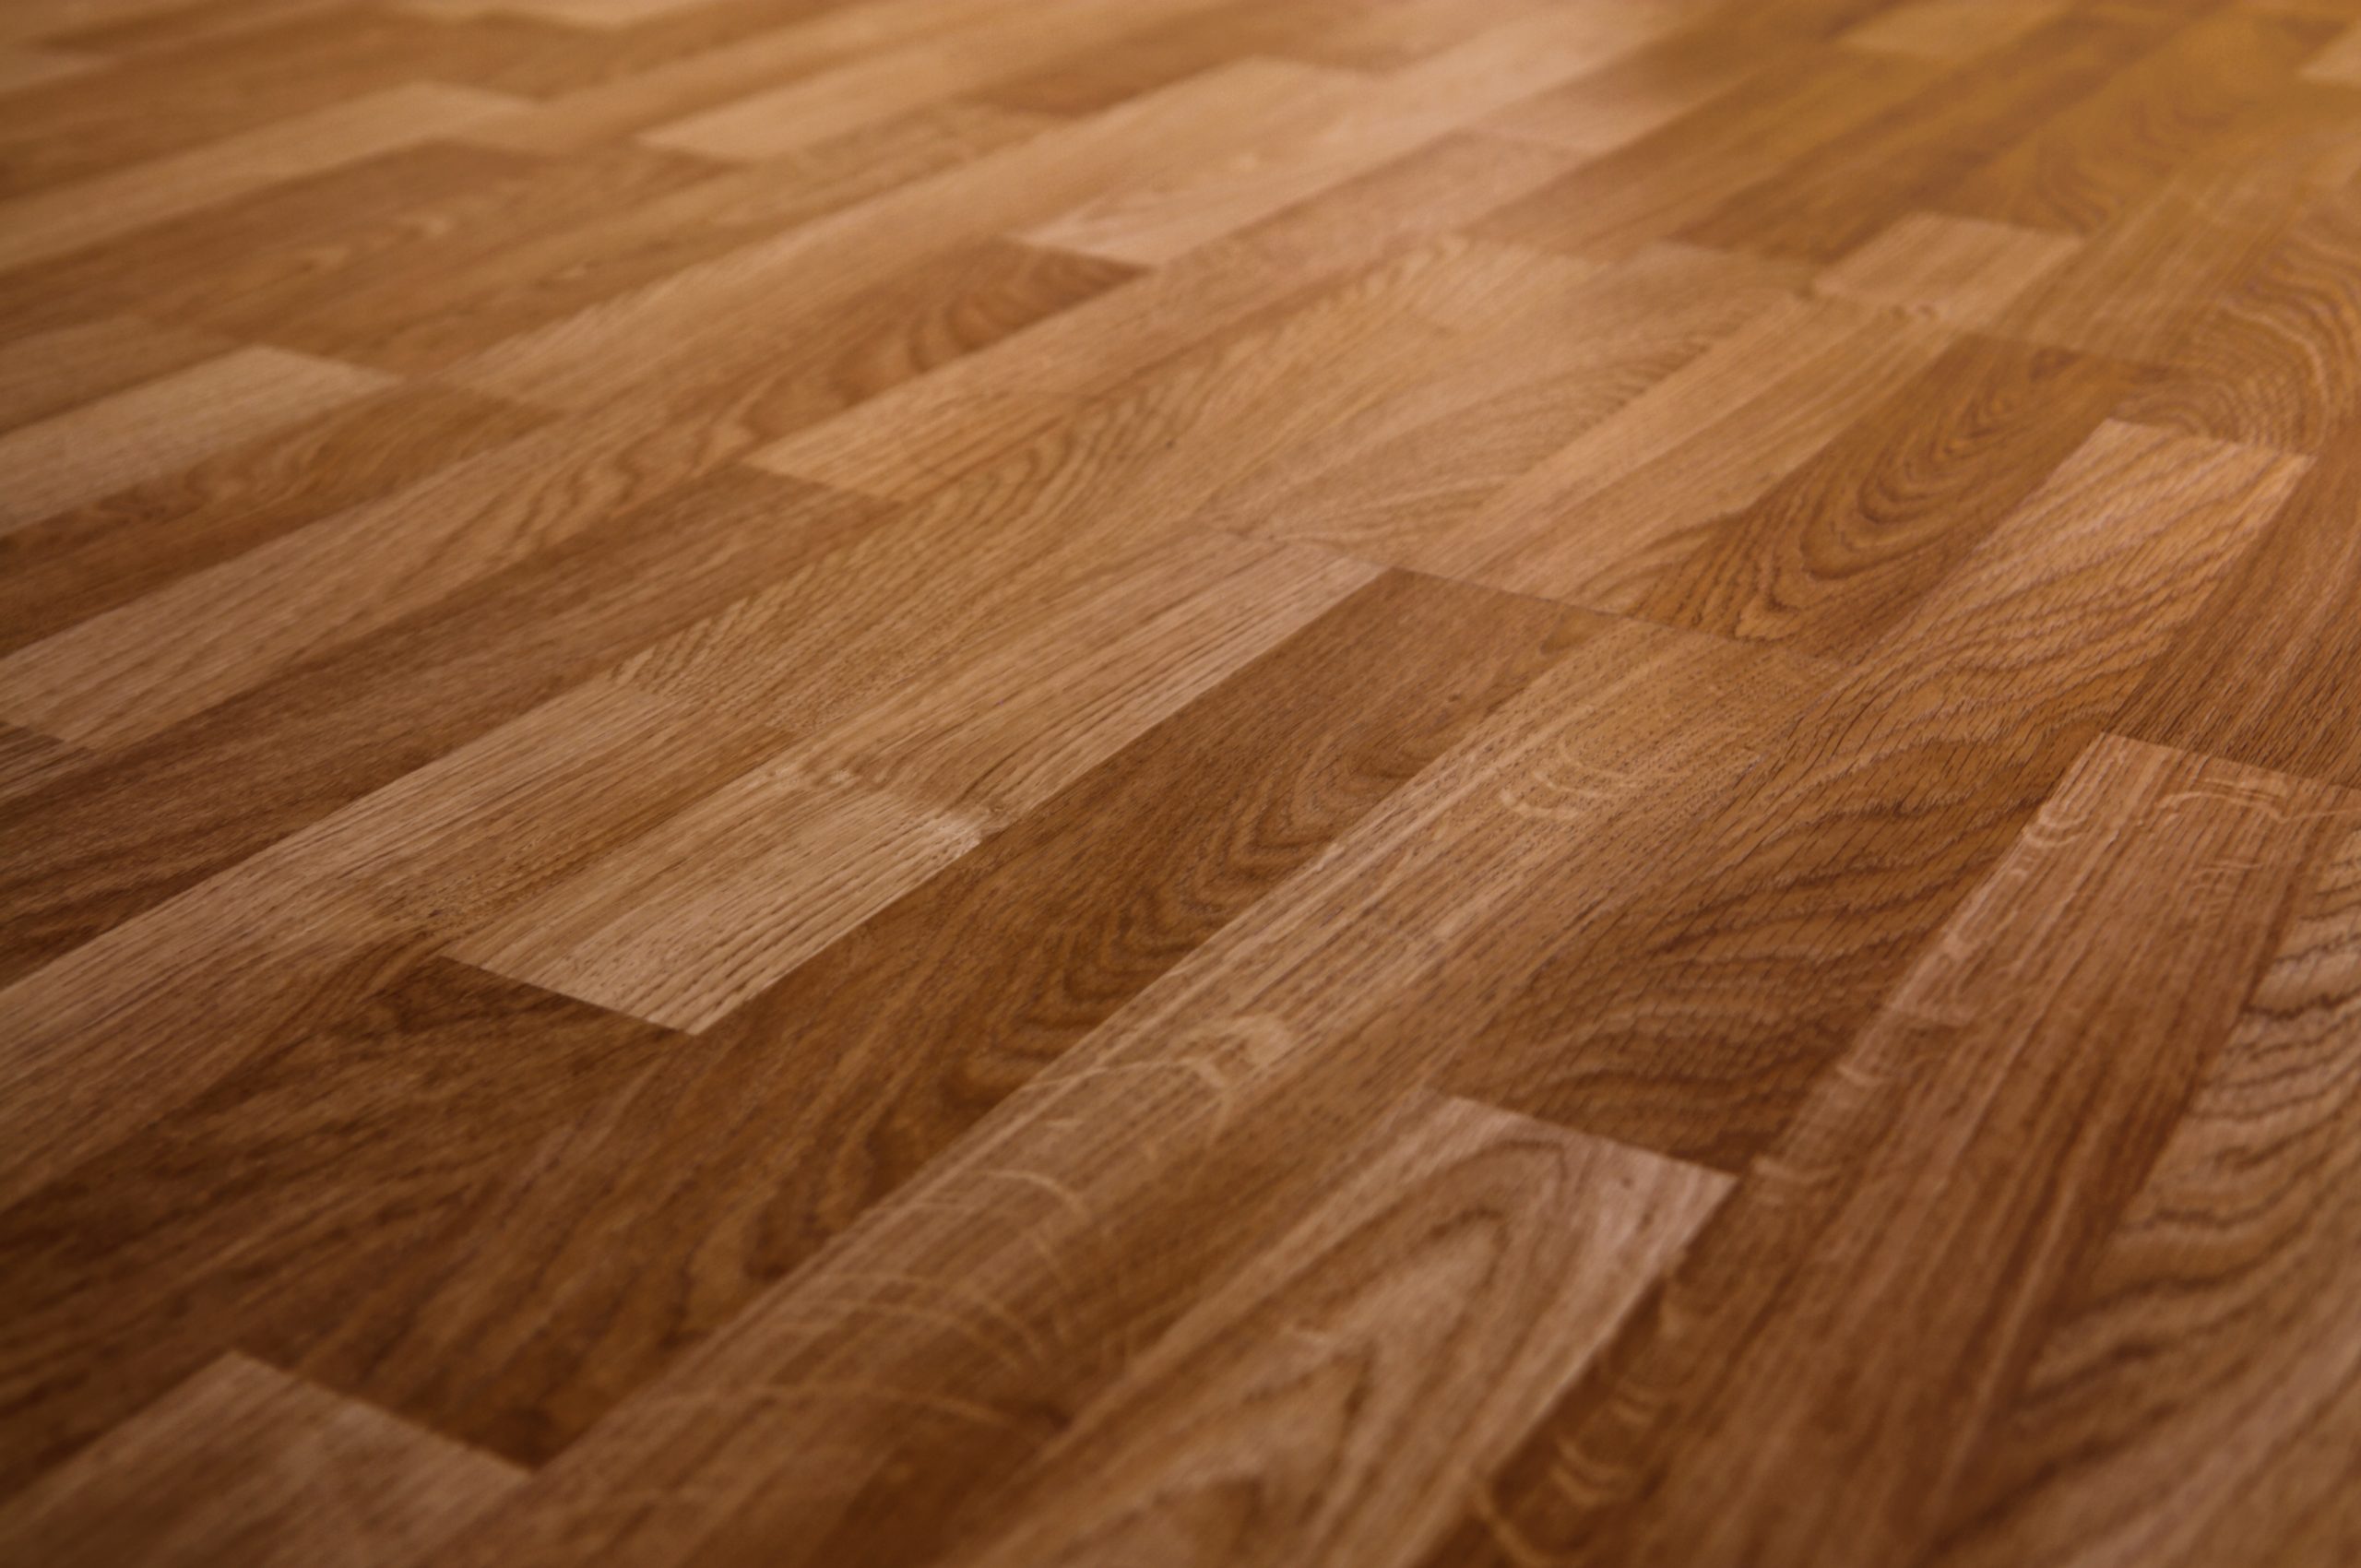 Photo of laminate flooring to illustrate Laminate Floors vs. Engineered Hardwood